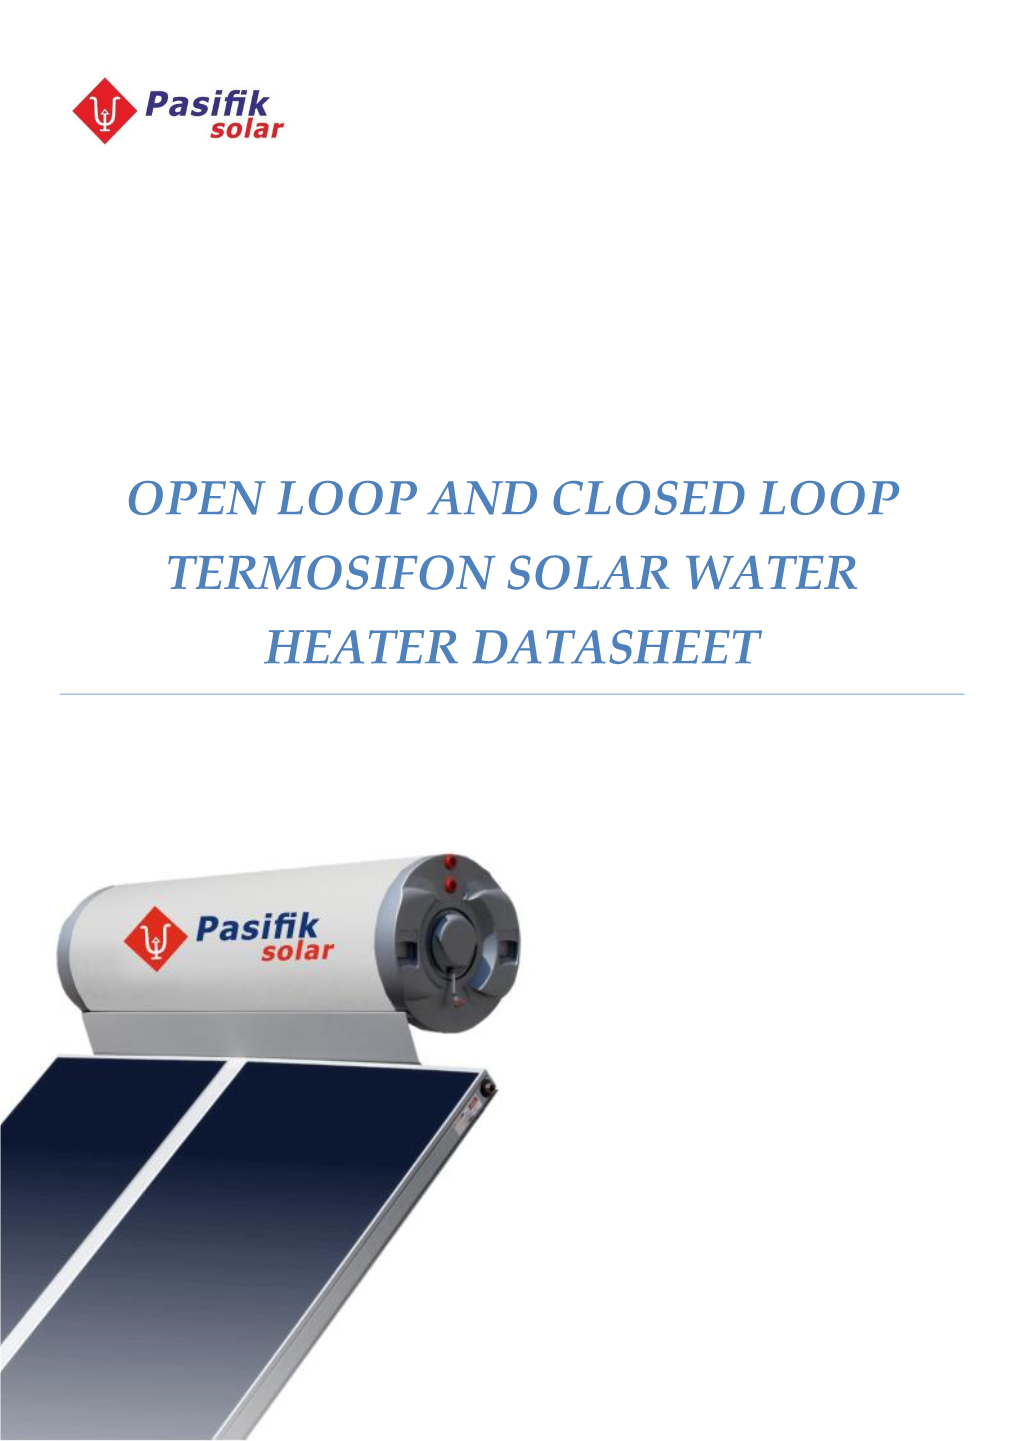 Open Loop and Closed Loop Termosifon Solar Water Heater Datasheet